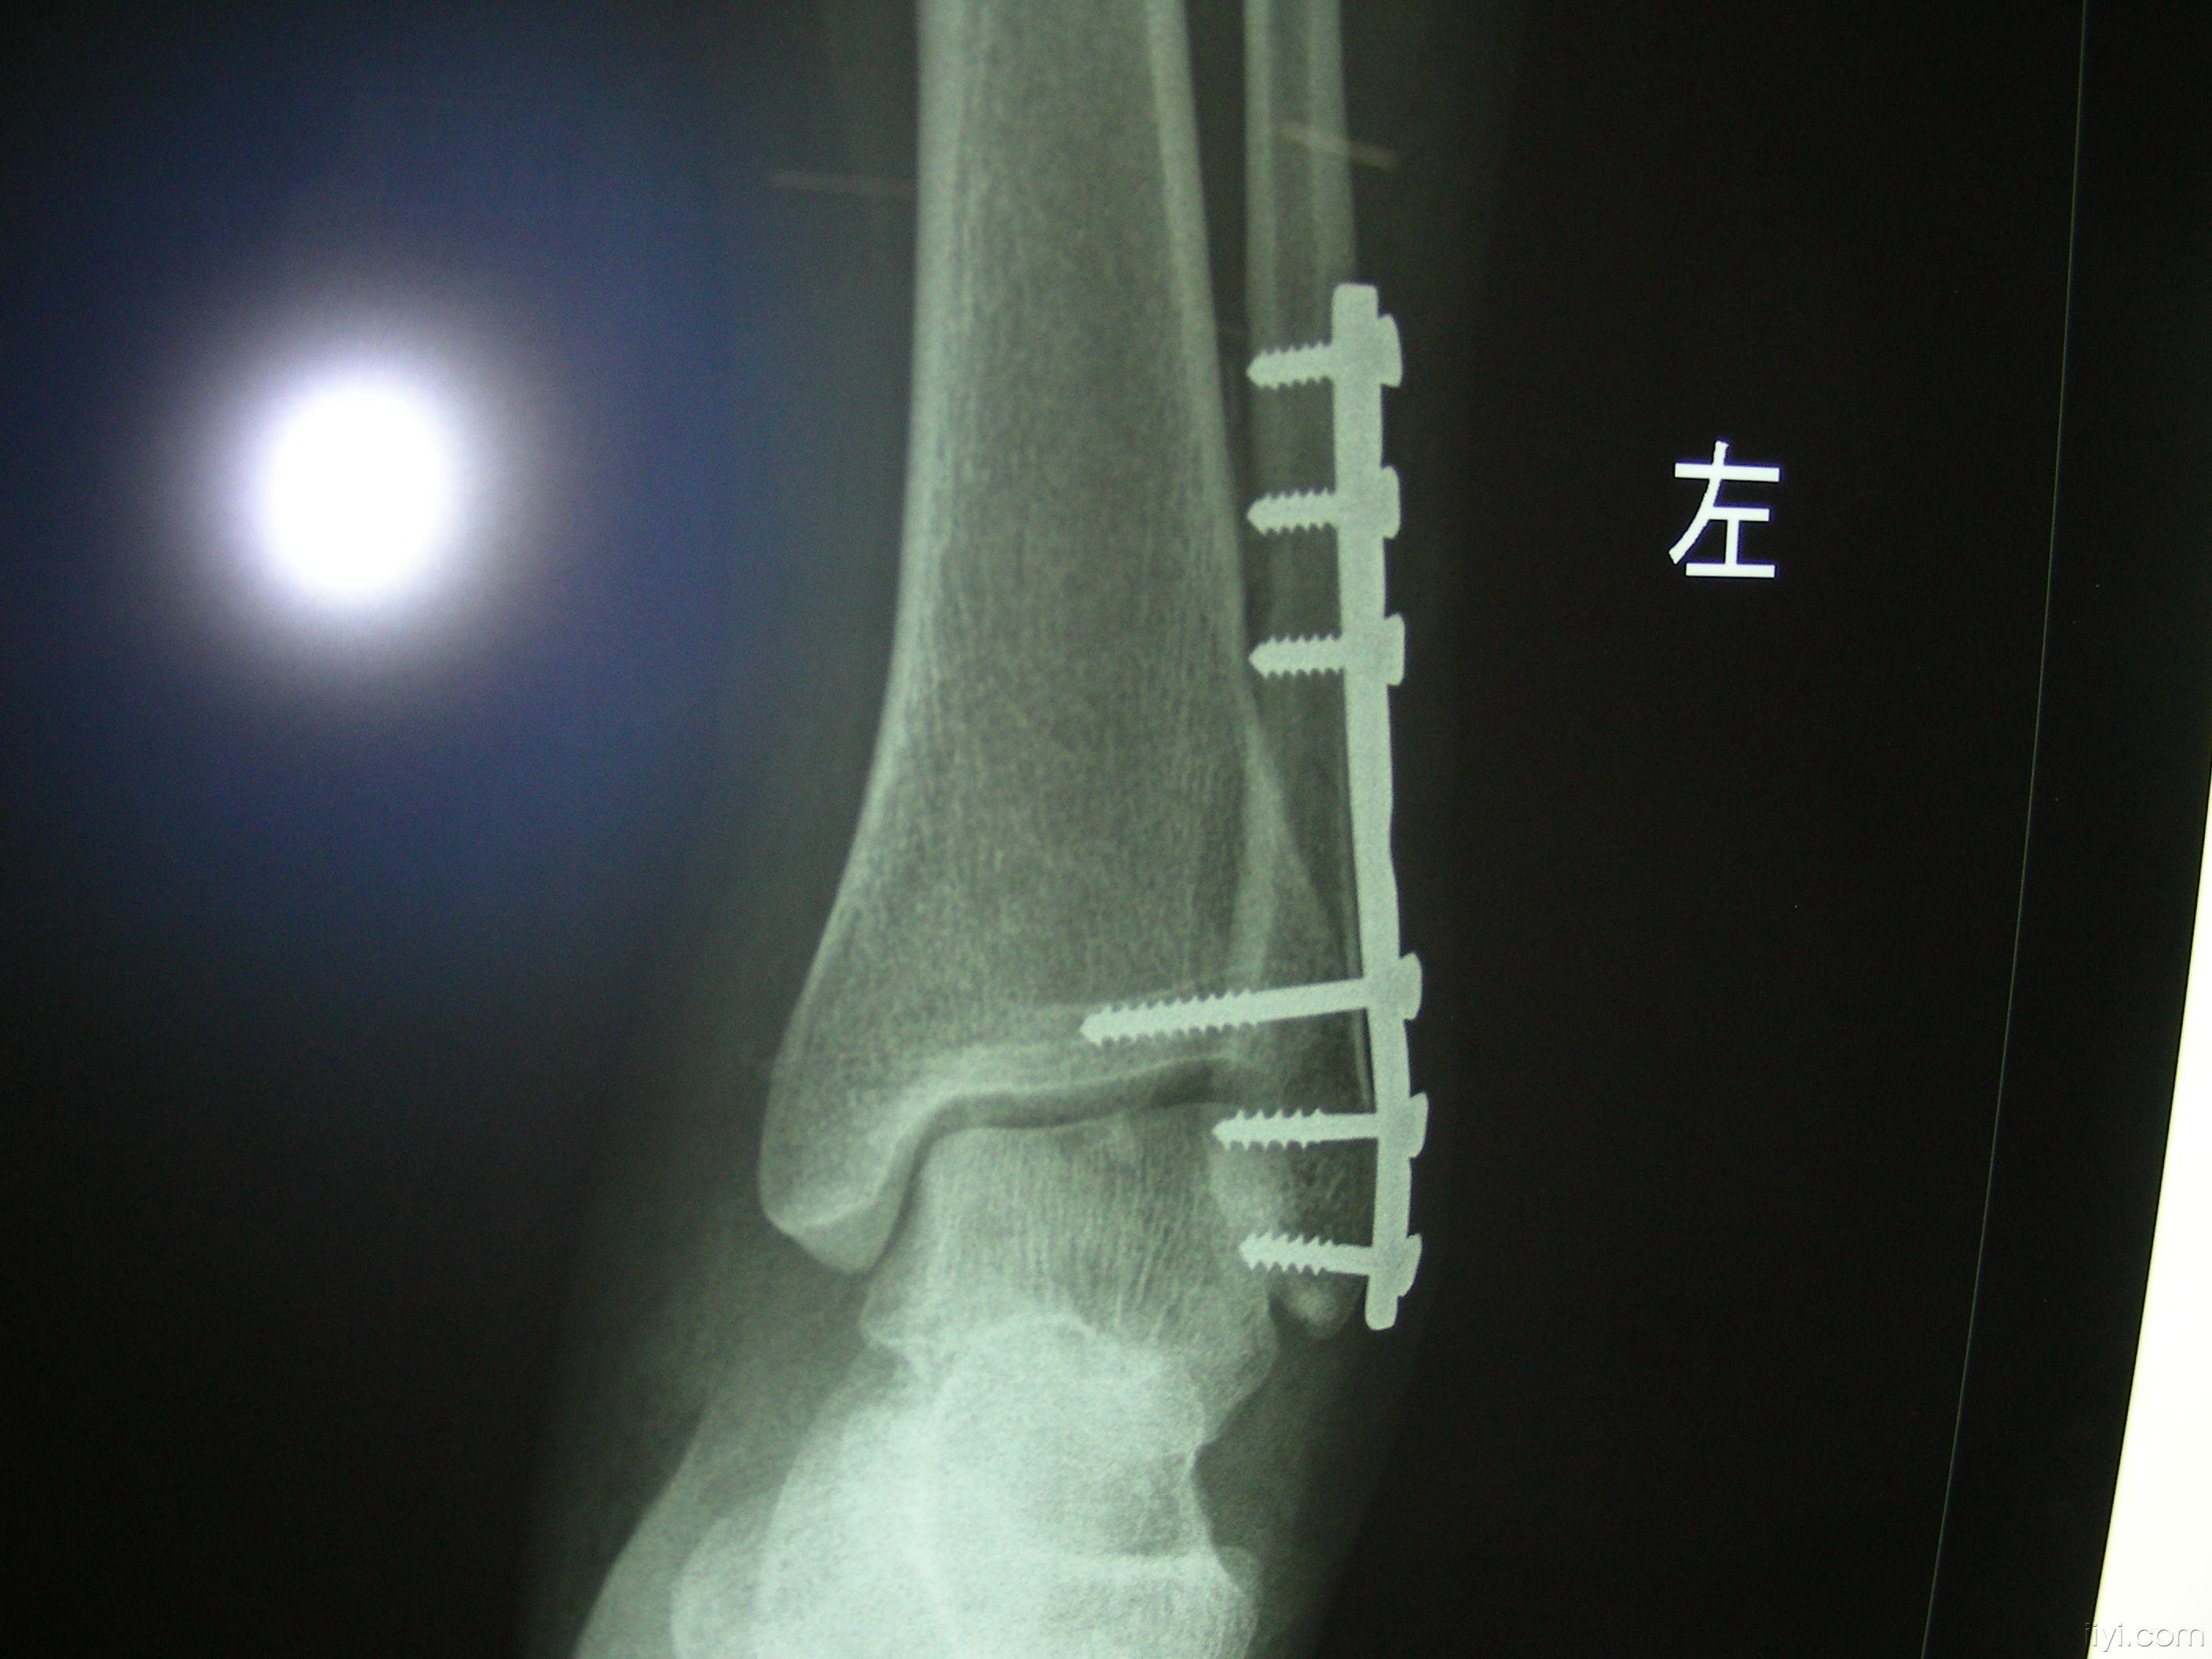 距腓前韧带损伤伴右外踝撕脱性骨折 - 病例中心(诊疗助手) - 爱爱医医学网